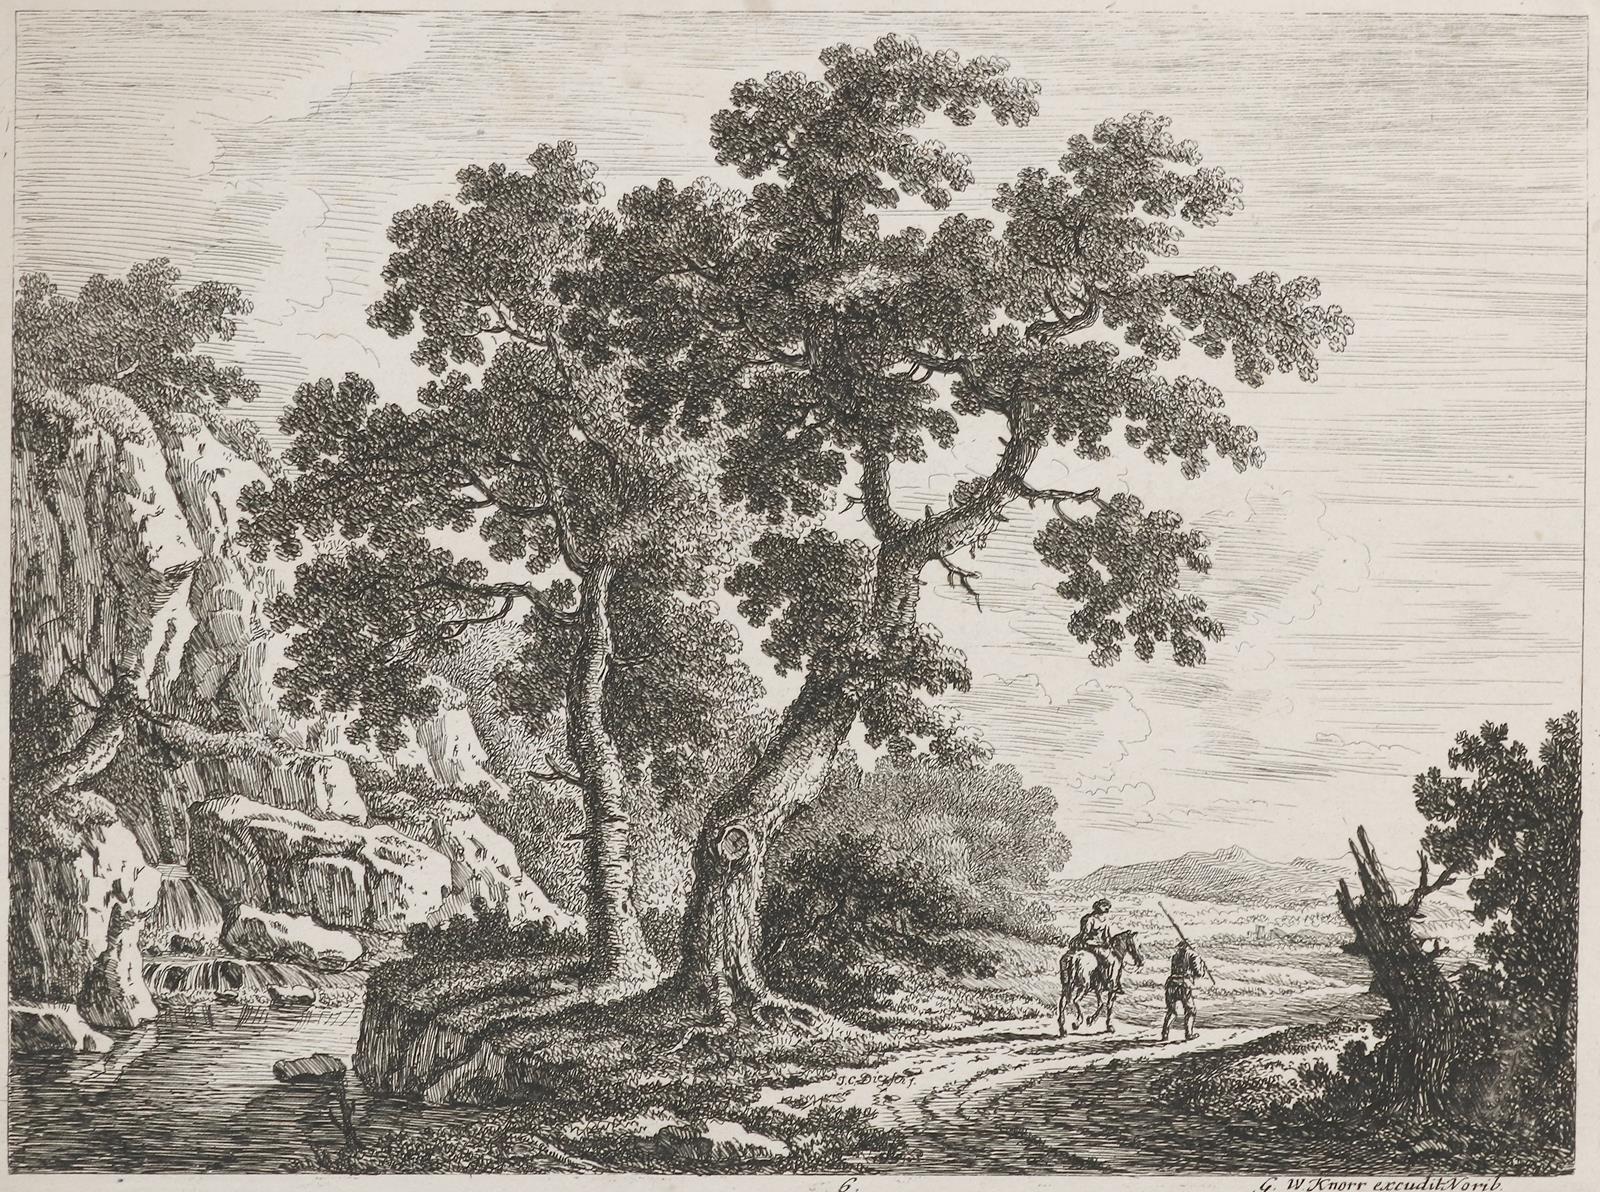 Dietzsch, Johann Christoph | Bild Nr.1